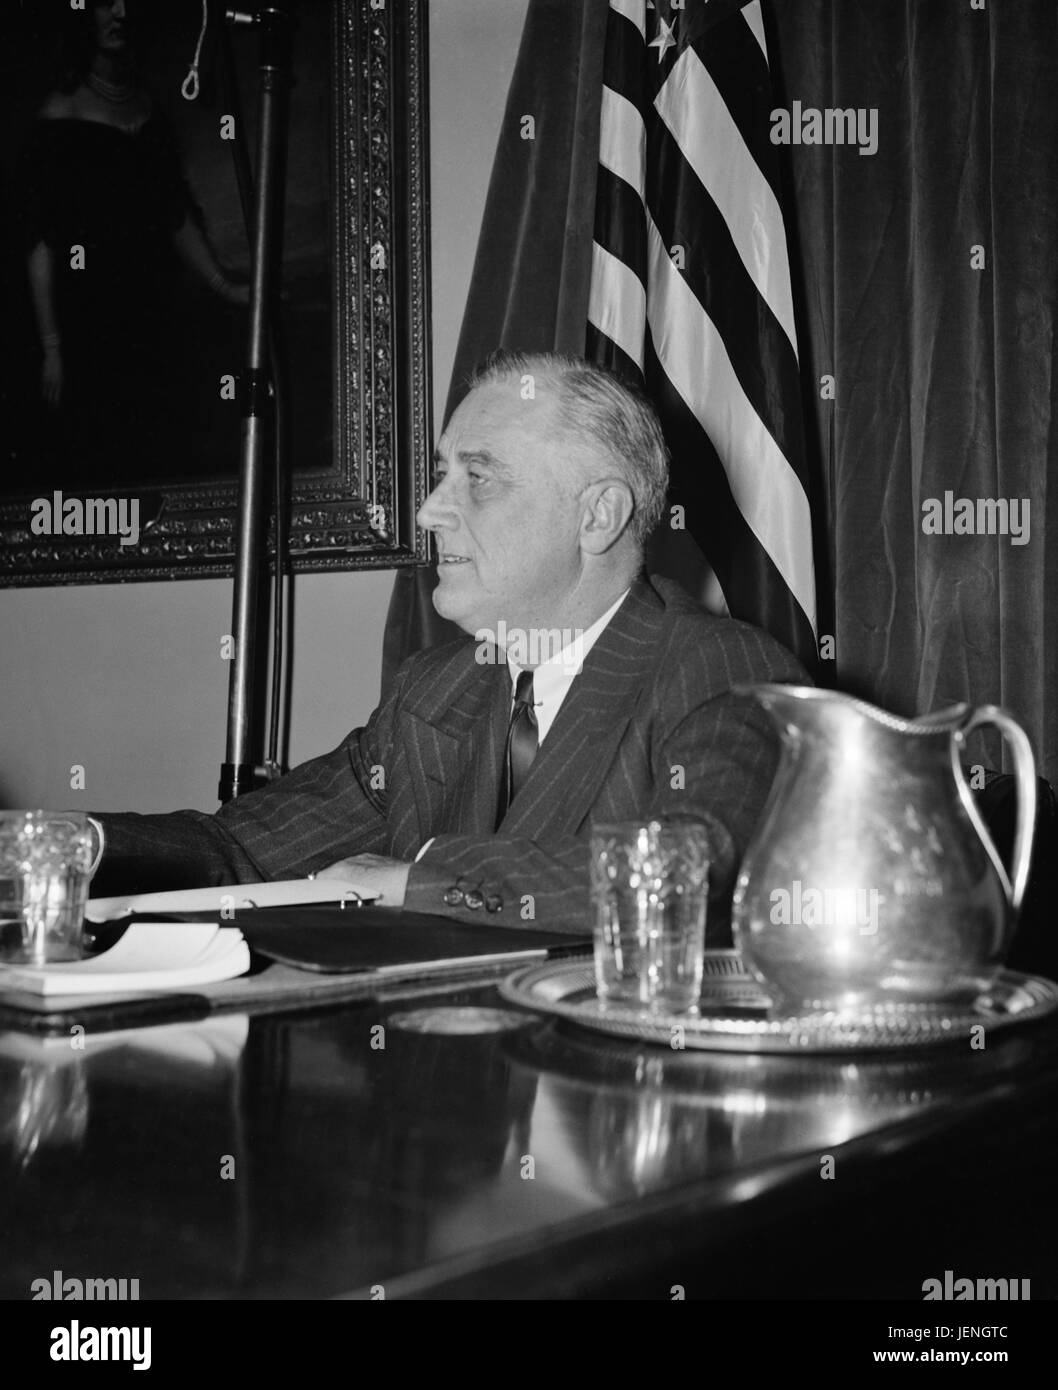 Stati Uniti Il presidente Franklin Roosevelt, Ritratto sul suo 58o compleanno, Washington DC, Stati Uniti d'America, Harris & Ewing, 30 Gennaio 1940 Foto Stock